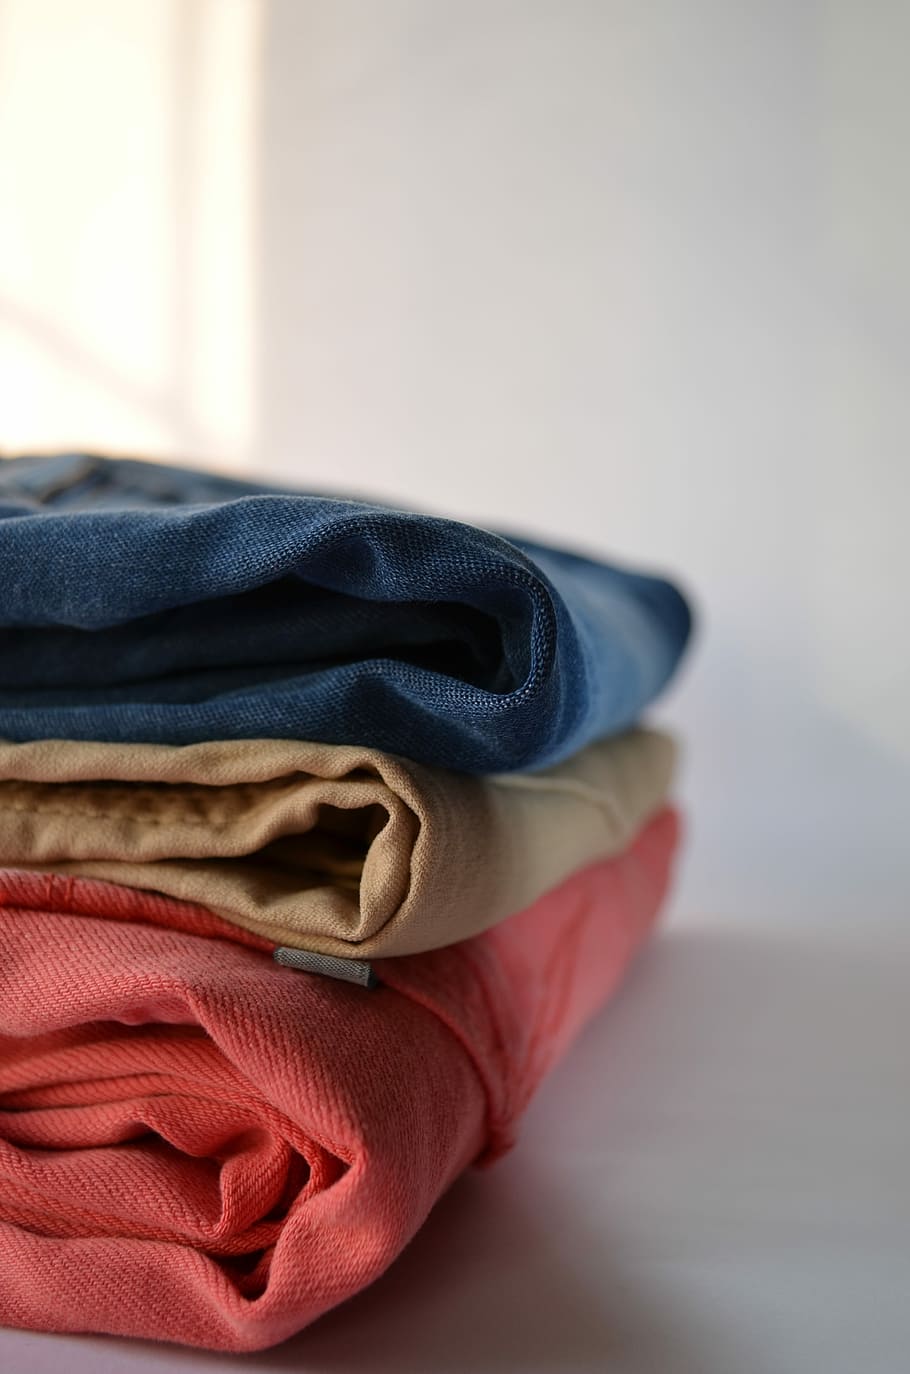 Laundry, Pants, Clothing, Clothes, textile, garment, housework, cotton, fashion, wash